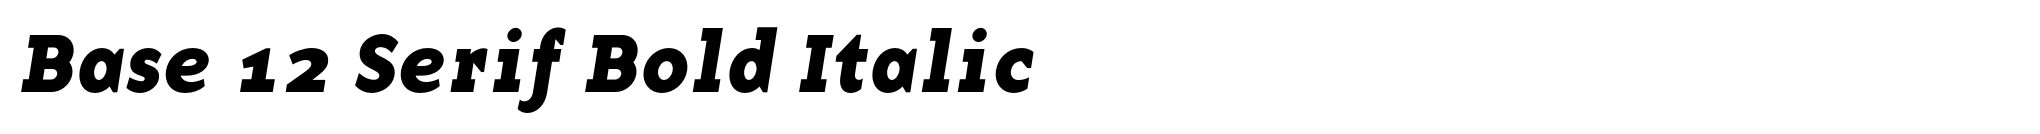 Base 12 Serif Bold Italic image